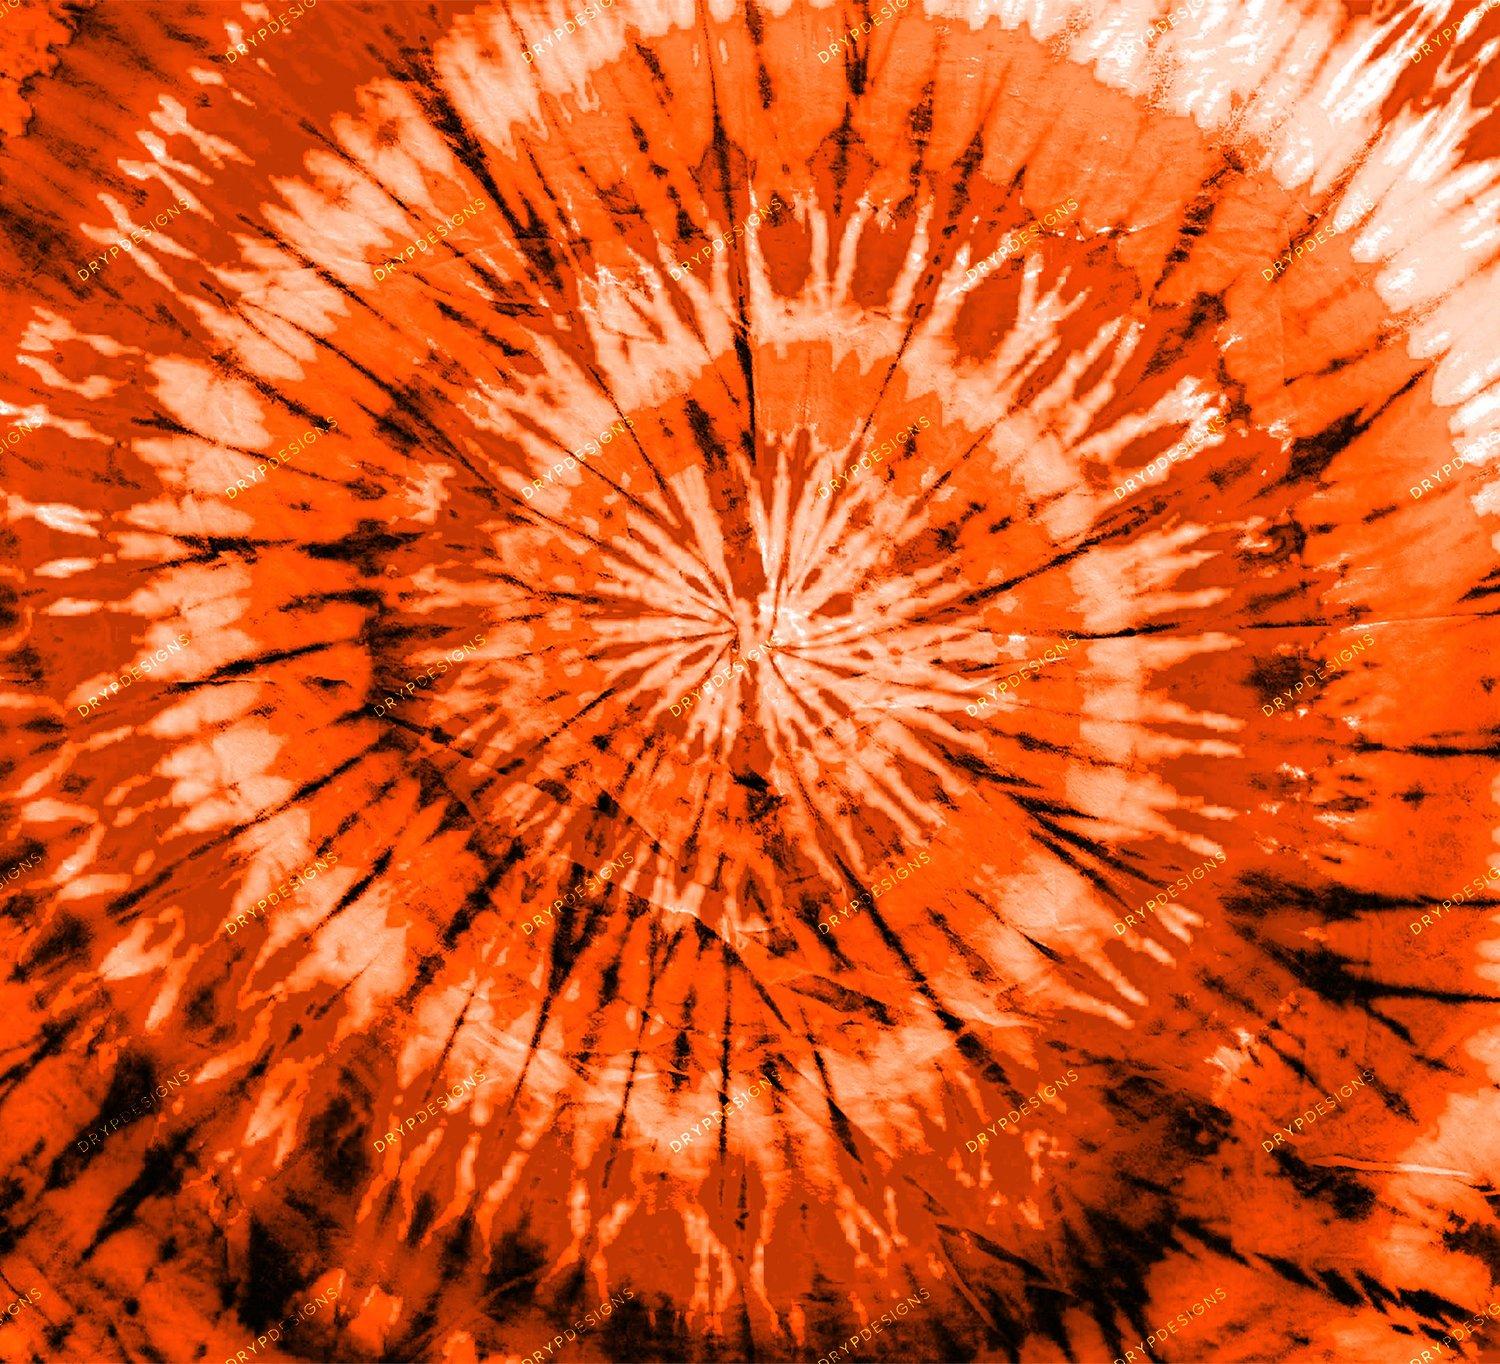 Orange Tie Dye Wallpapers - Top Free Orange Tie Dye Backgrounds ...